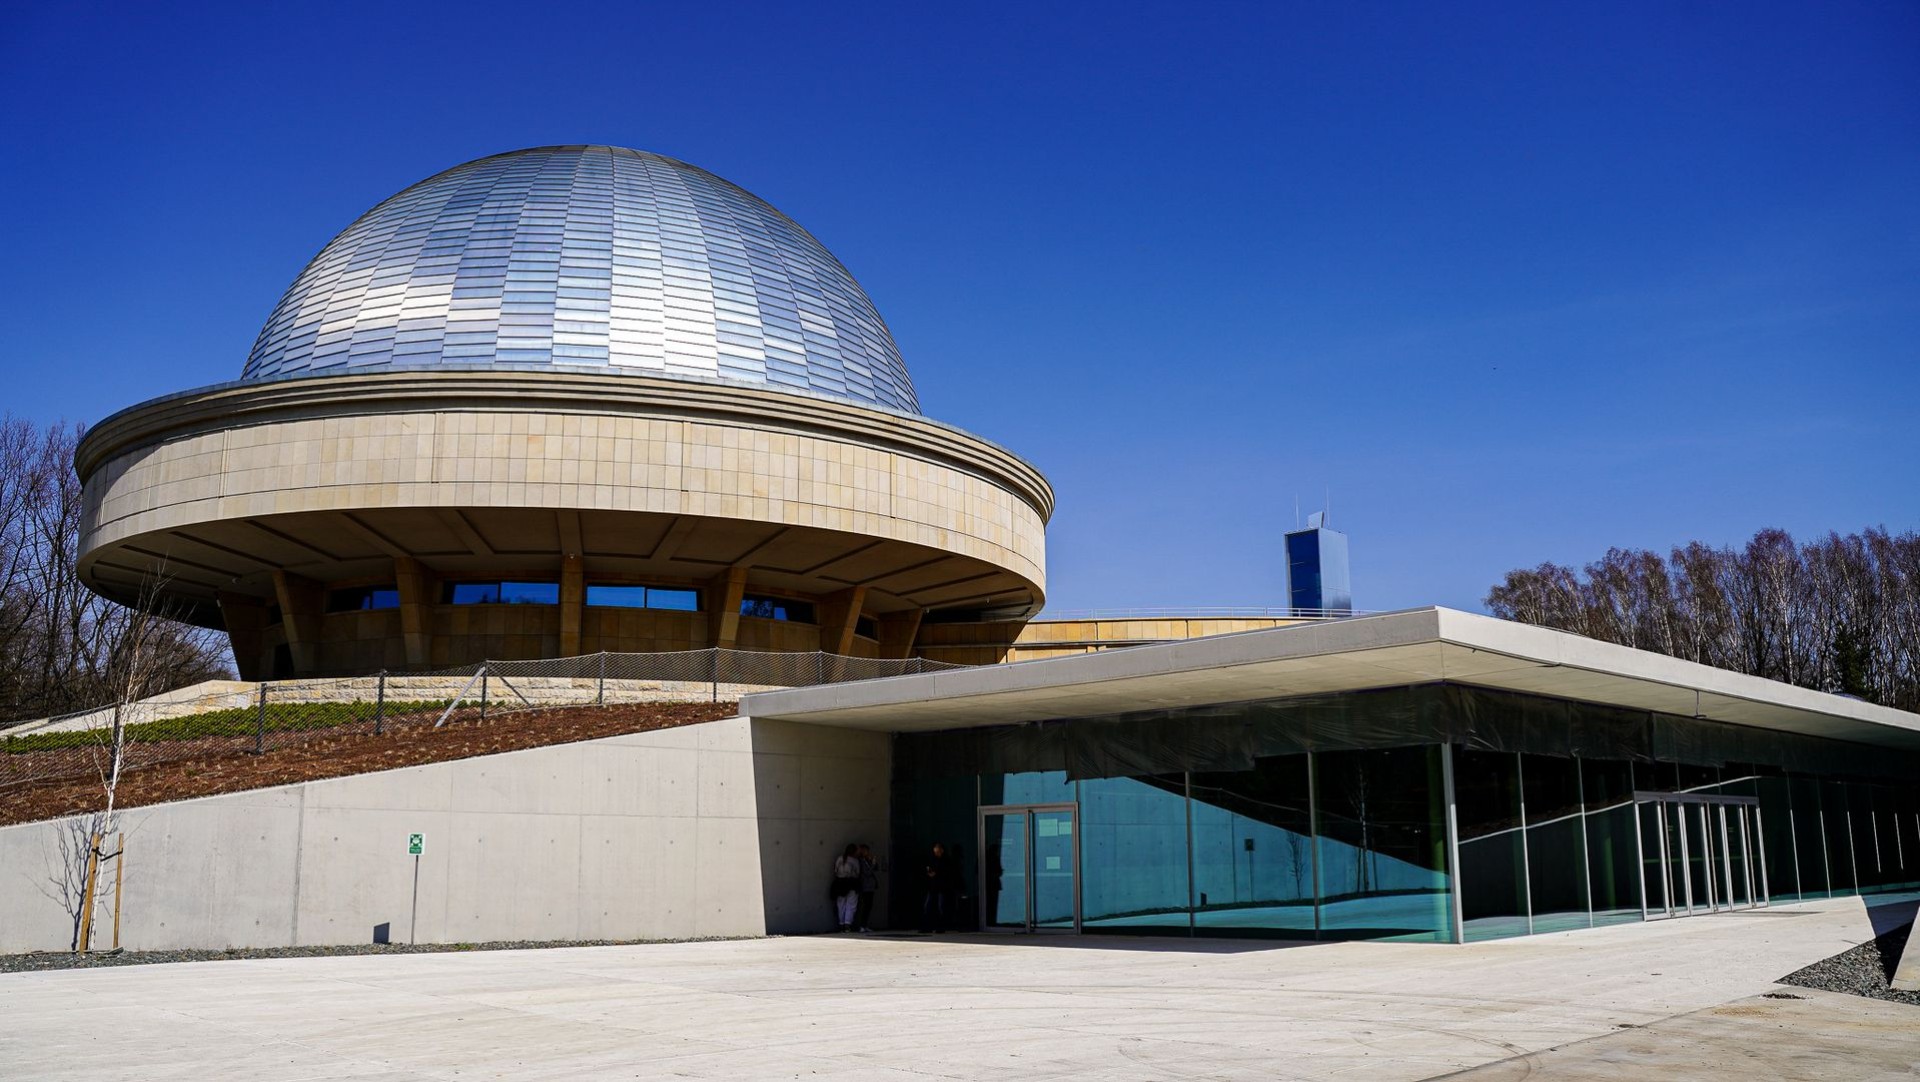 Fot. Grzegorz Bargieła/WKATOWICACH.eu. Wielkie otwarcie Planetarium - Śląskiego Parku Nauki już 11-12 czerwca